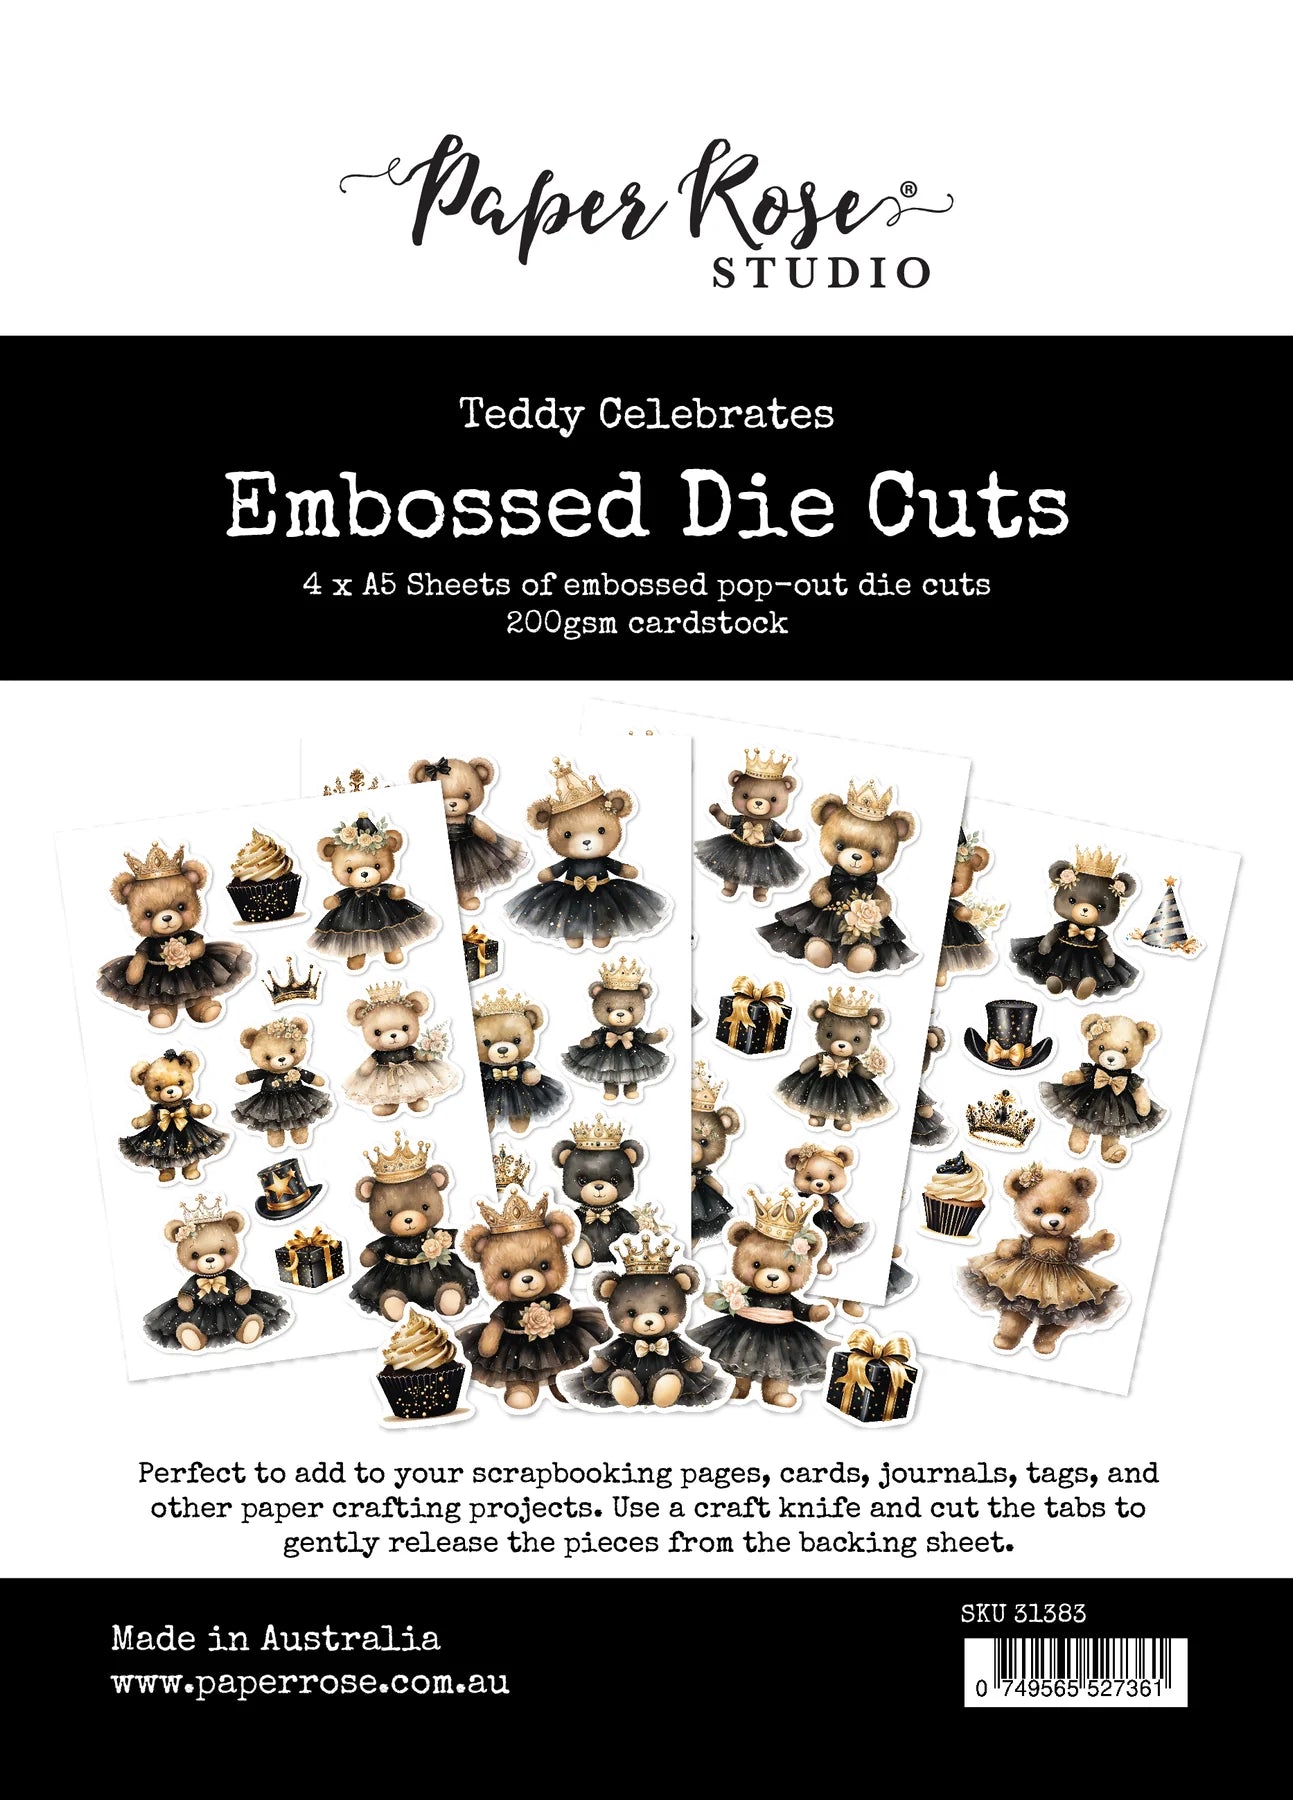 Teddy Celebrates Embossed Die Cuts 31383